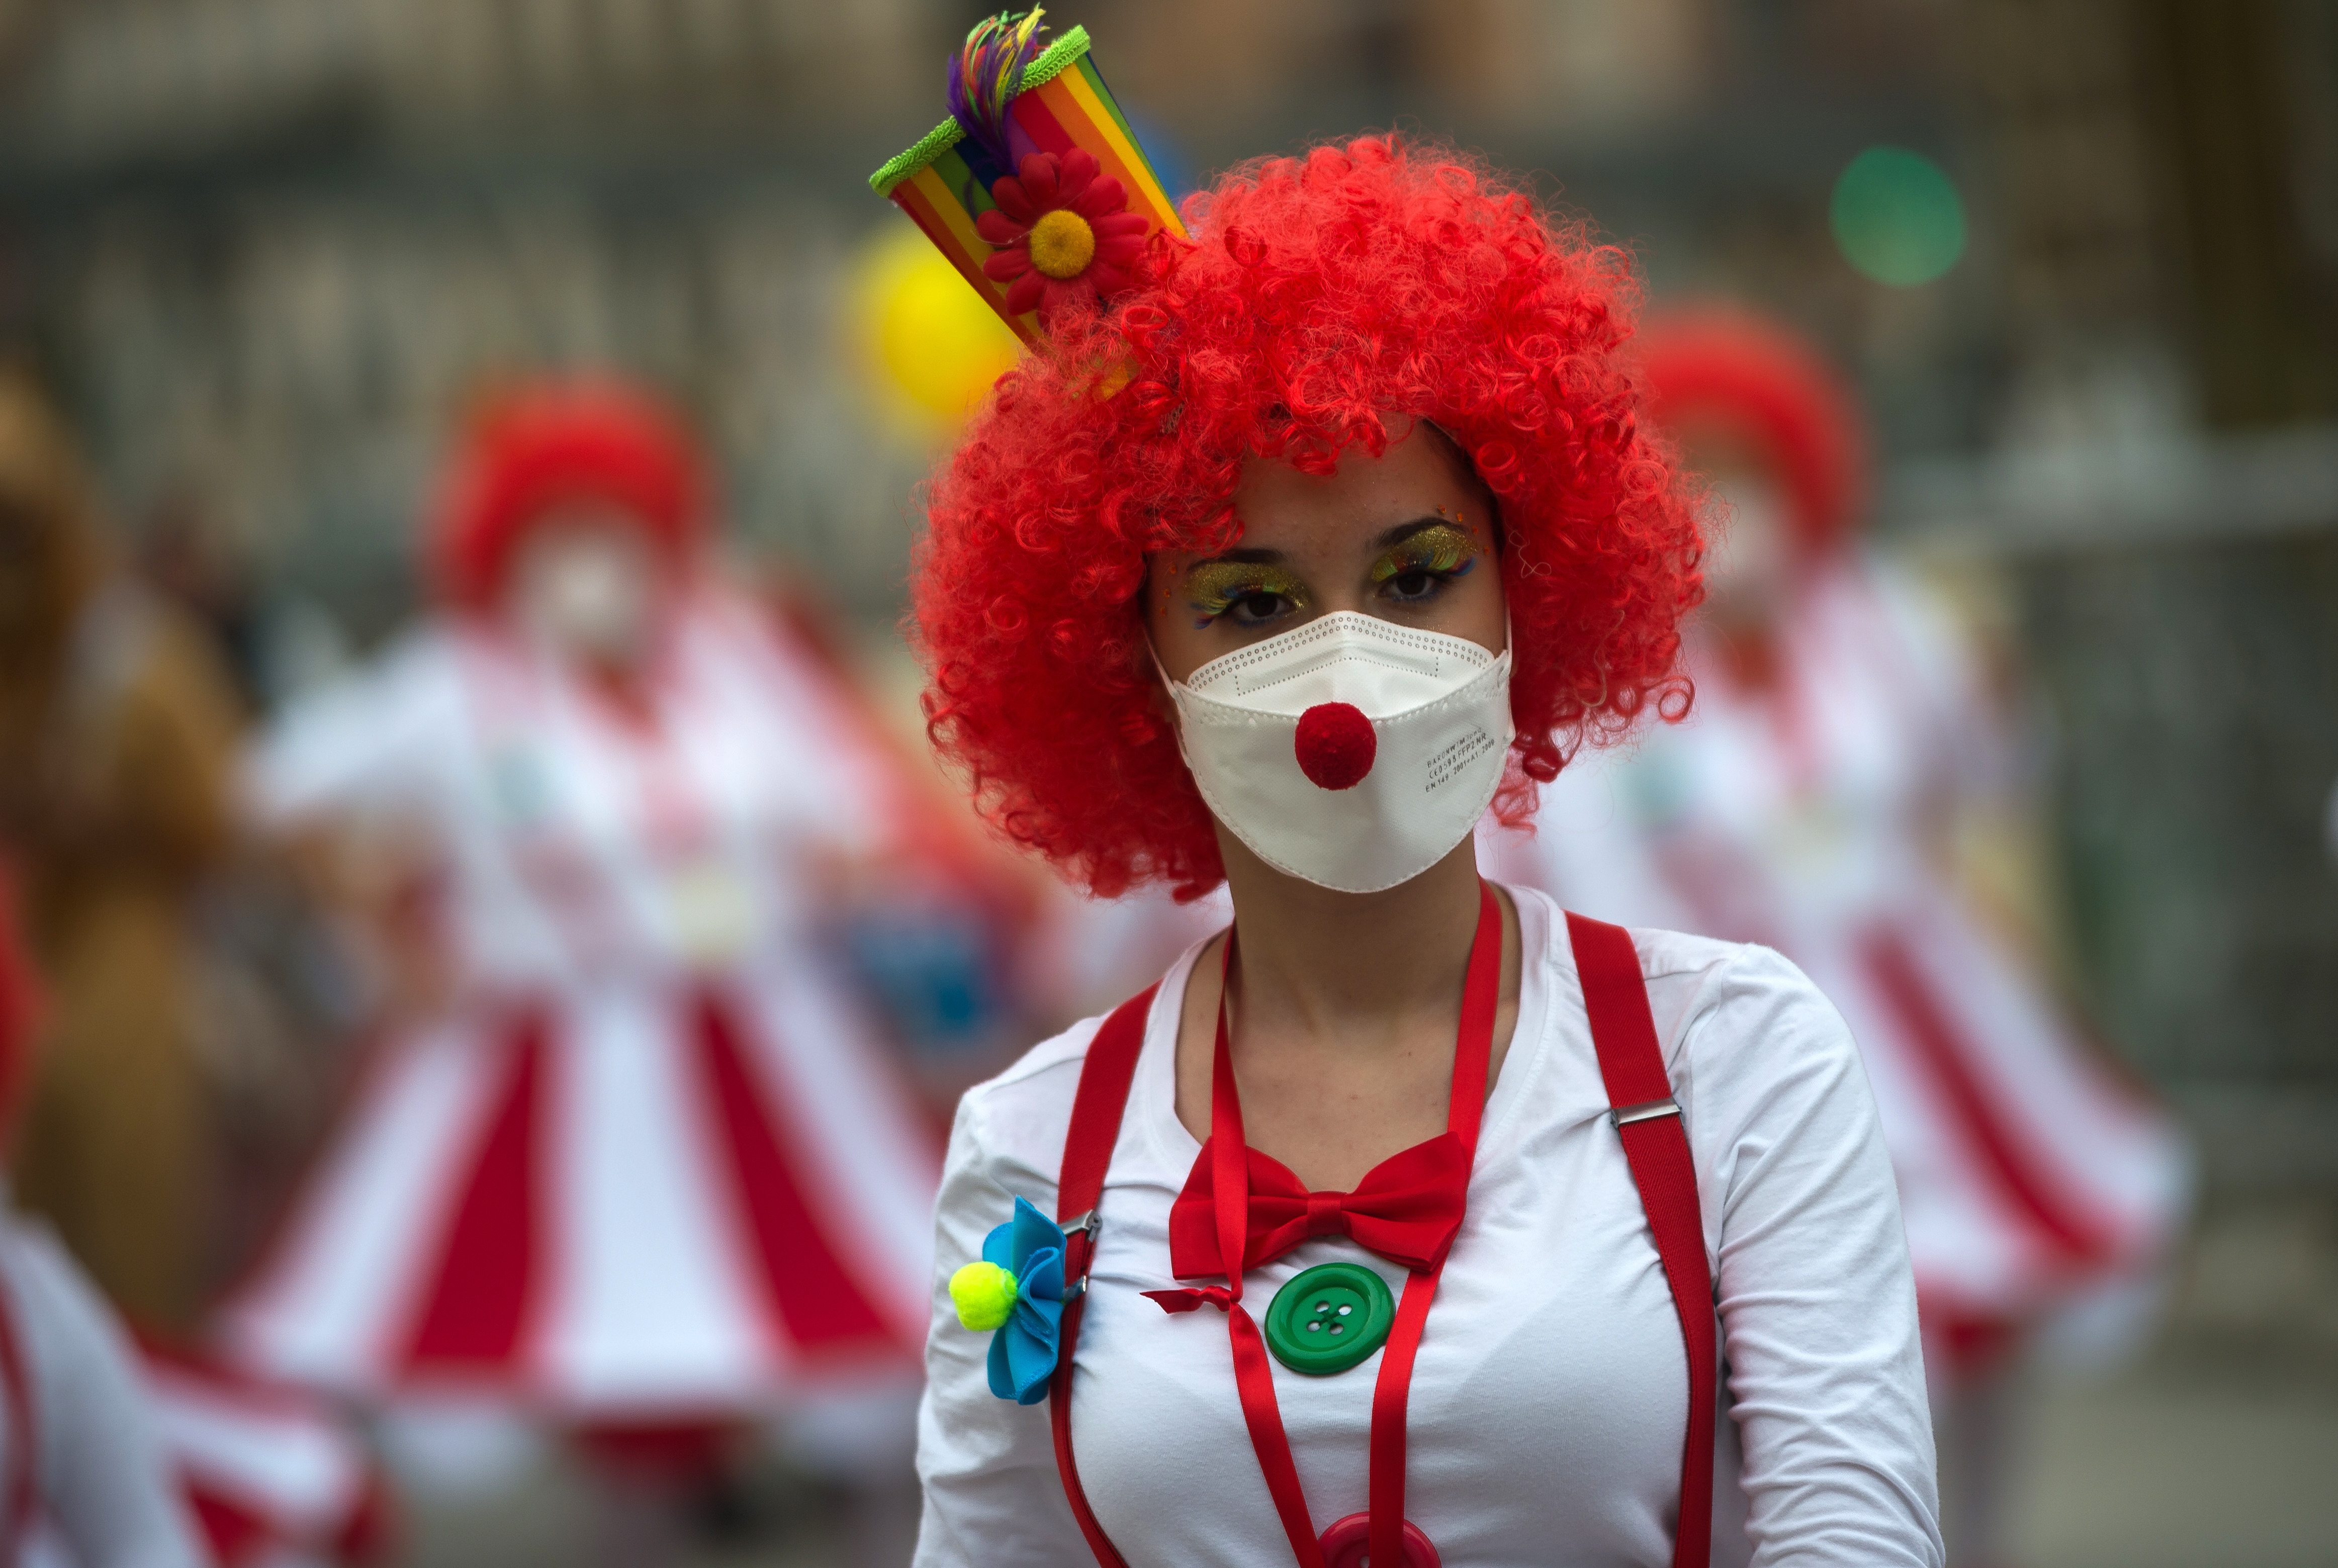 Une femme habillée en clown. | Source : Getty Images